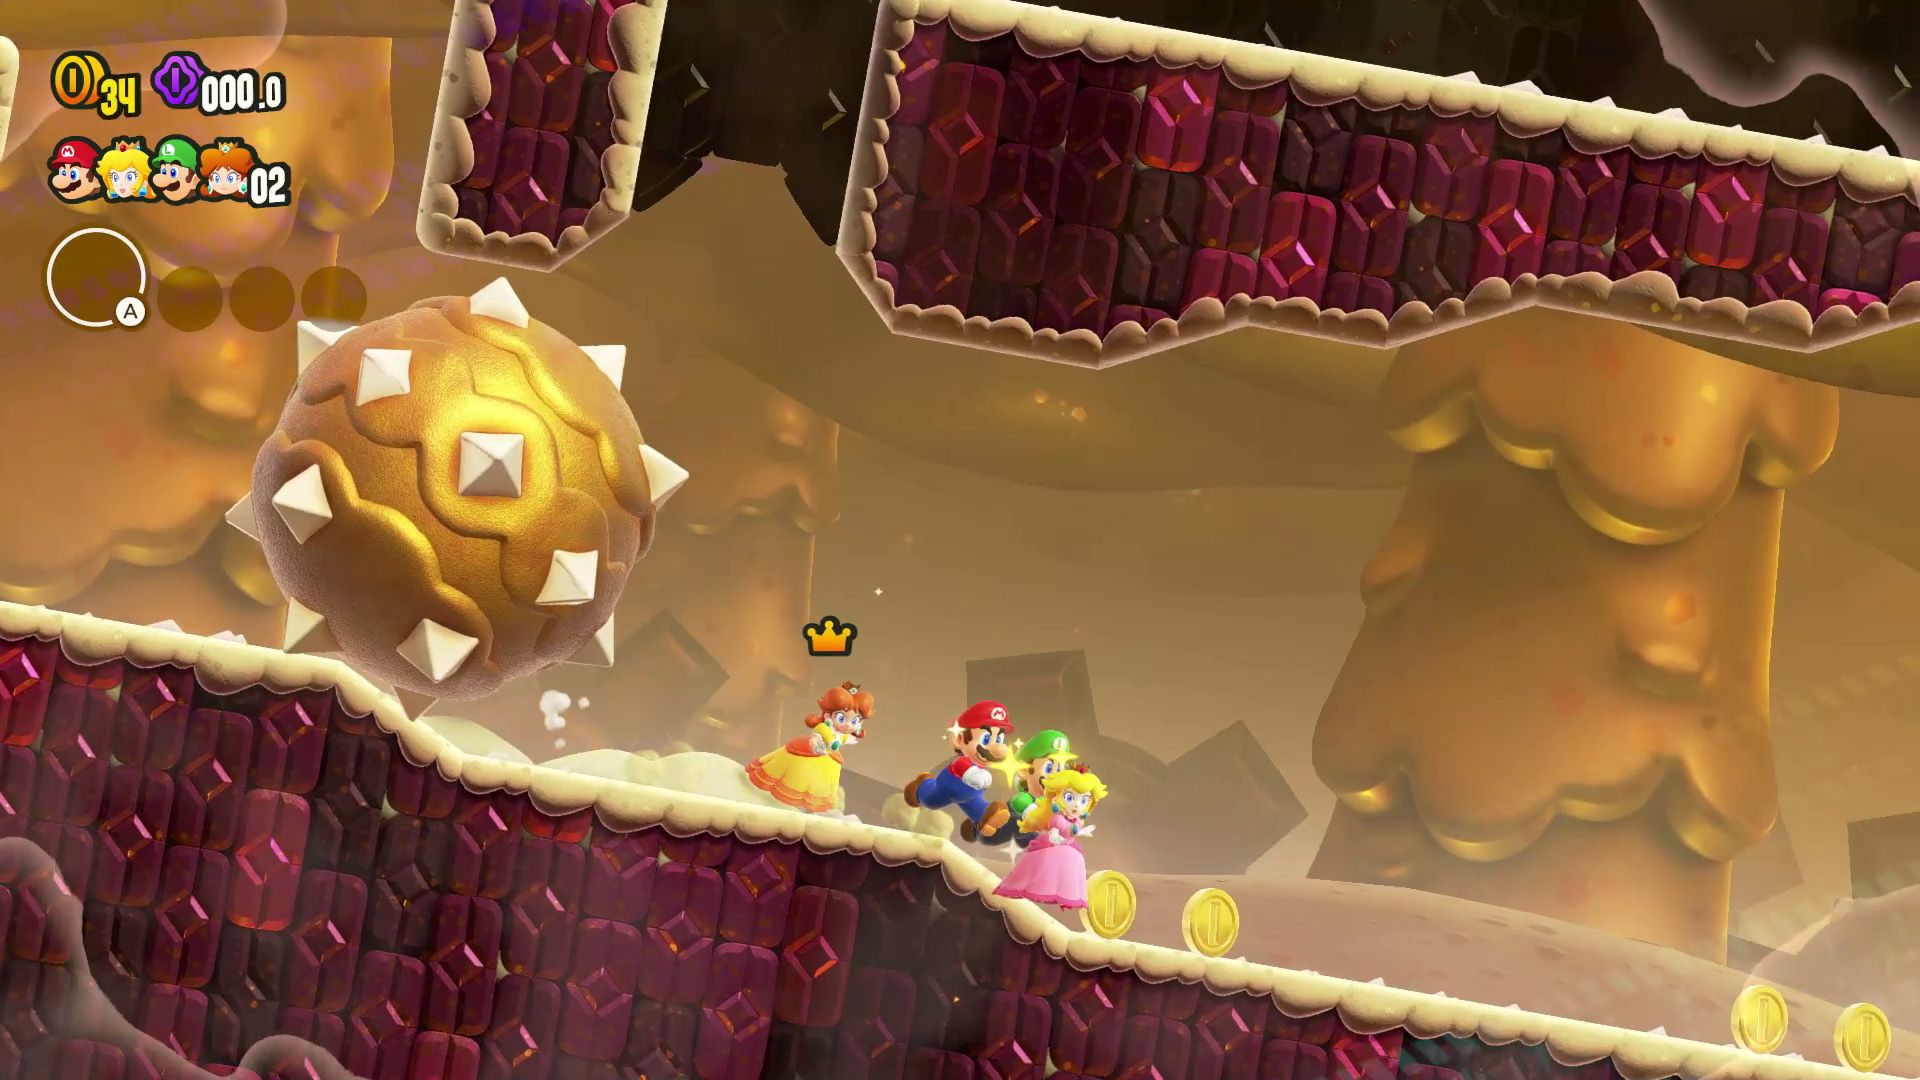  Марио и его друзья бегут от шипастого мяча по песчаному уровню в Super Mario Bros Wonder